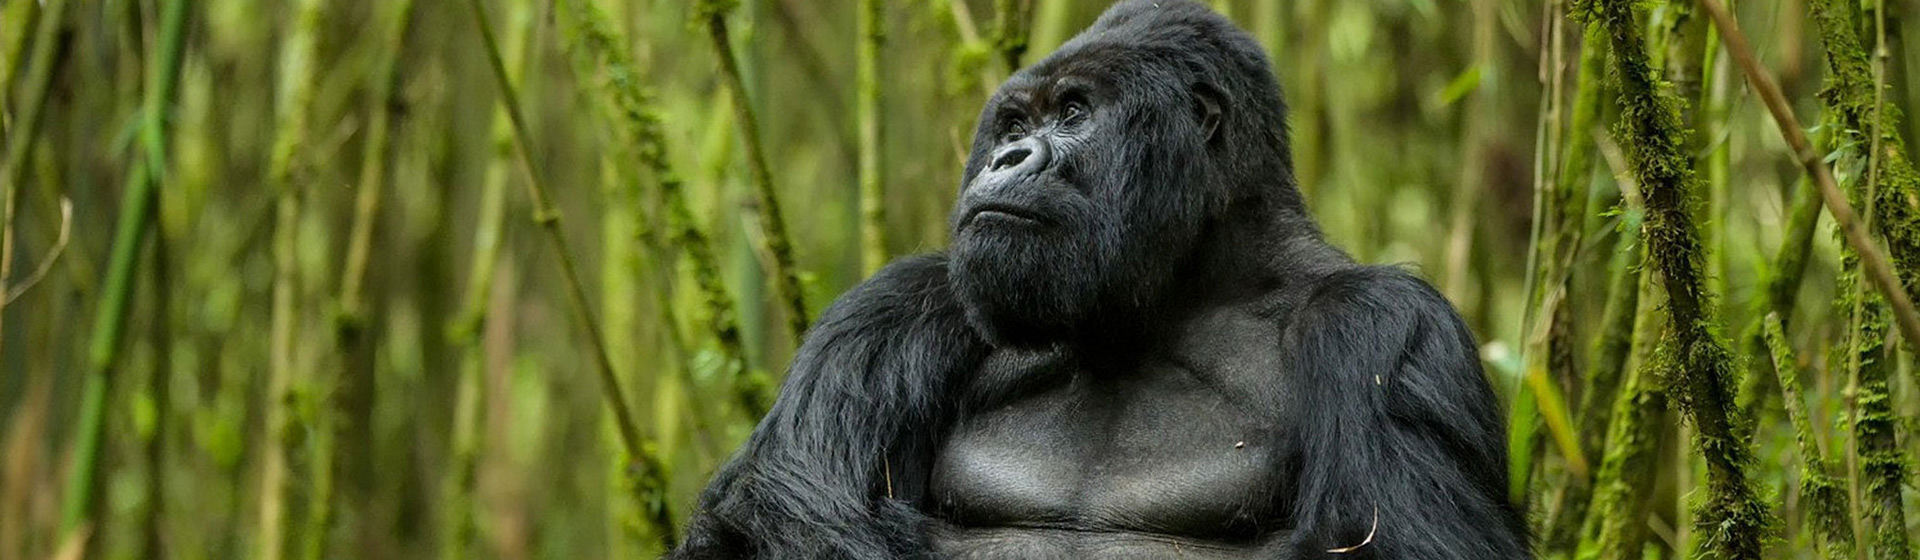 14 Days Uganda Gorilla Trekking